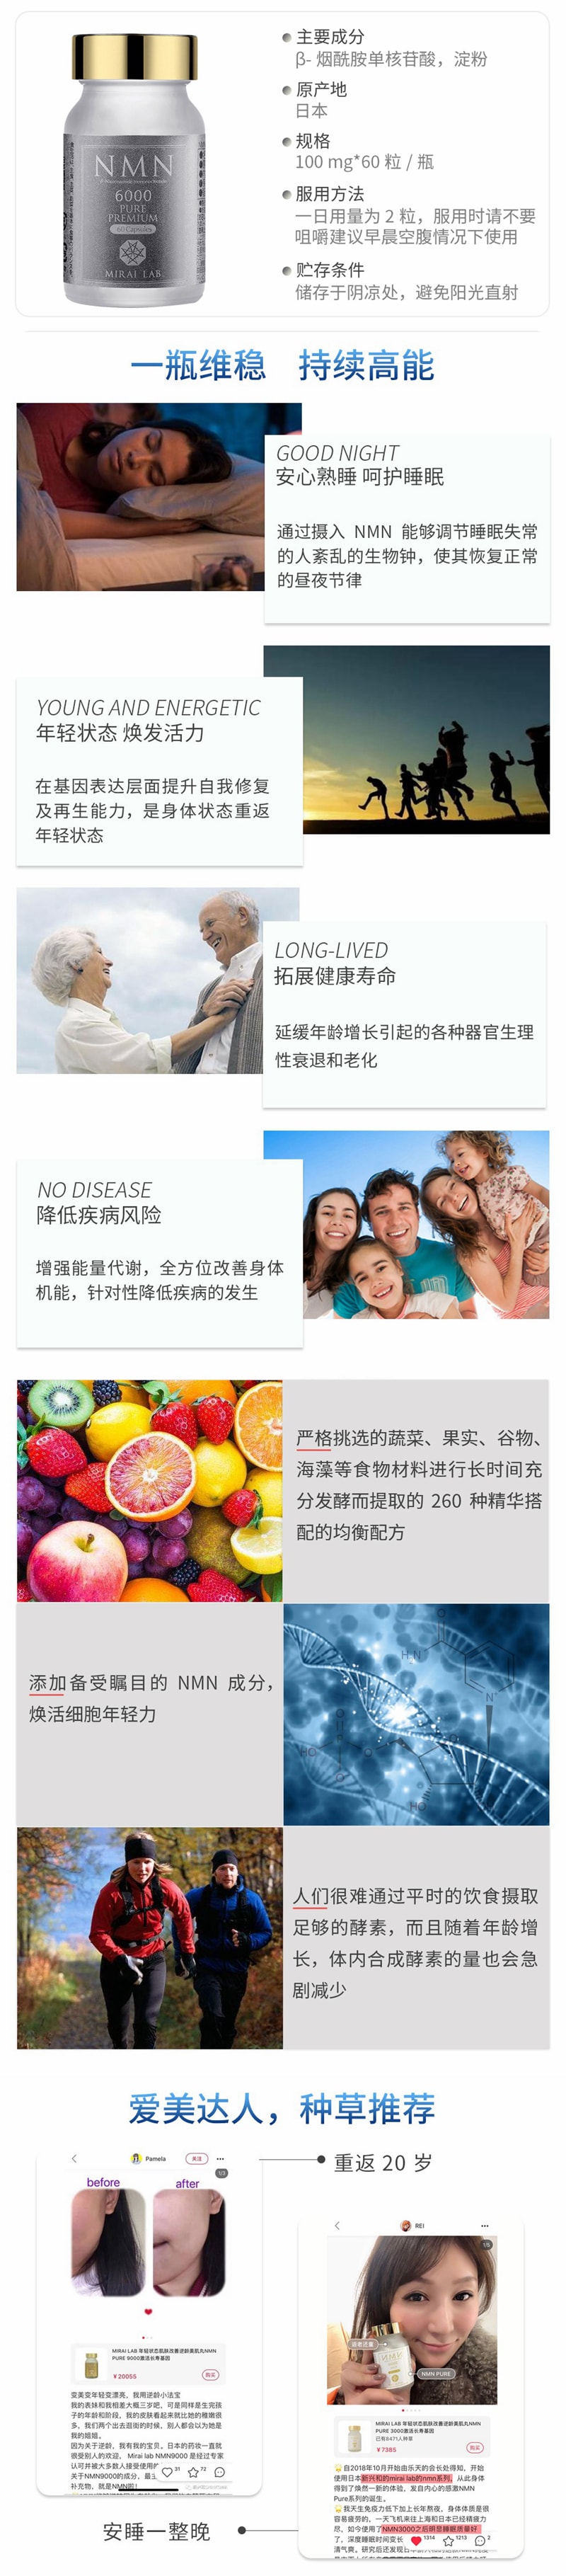 【日本直邮】新兴和制药 MIRAI LAB NMN6000 高纯度抗衰老 逆龄丸